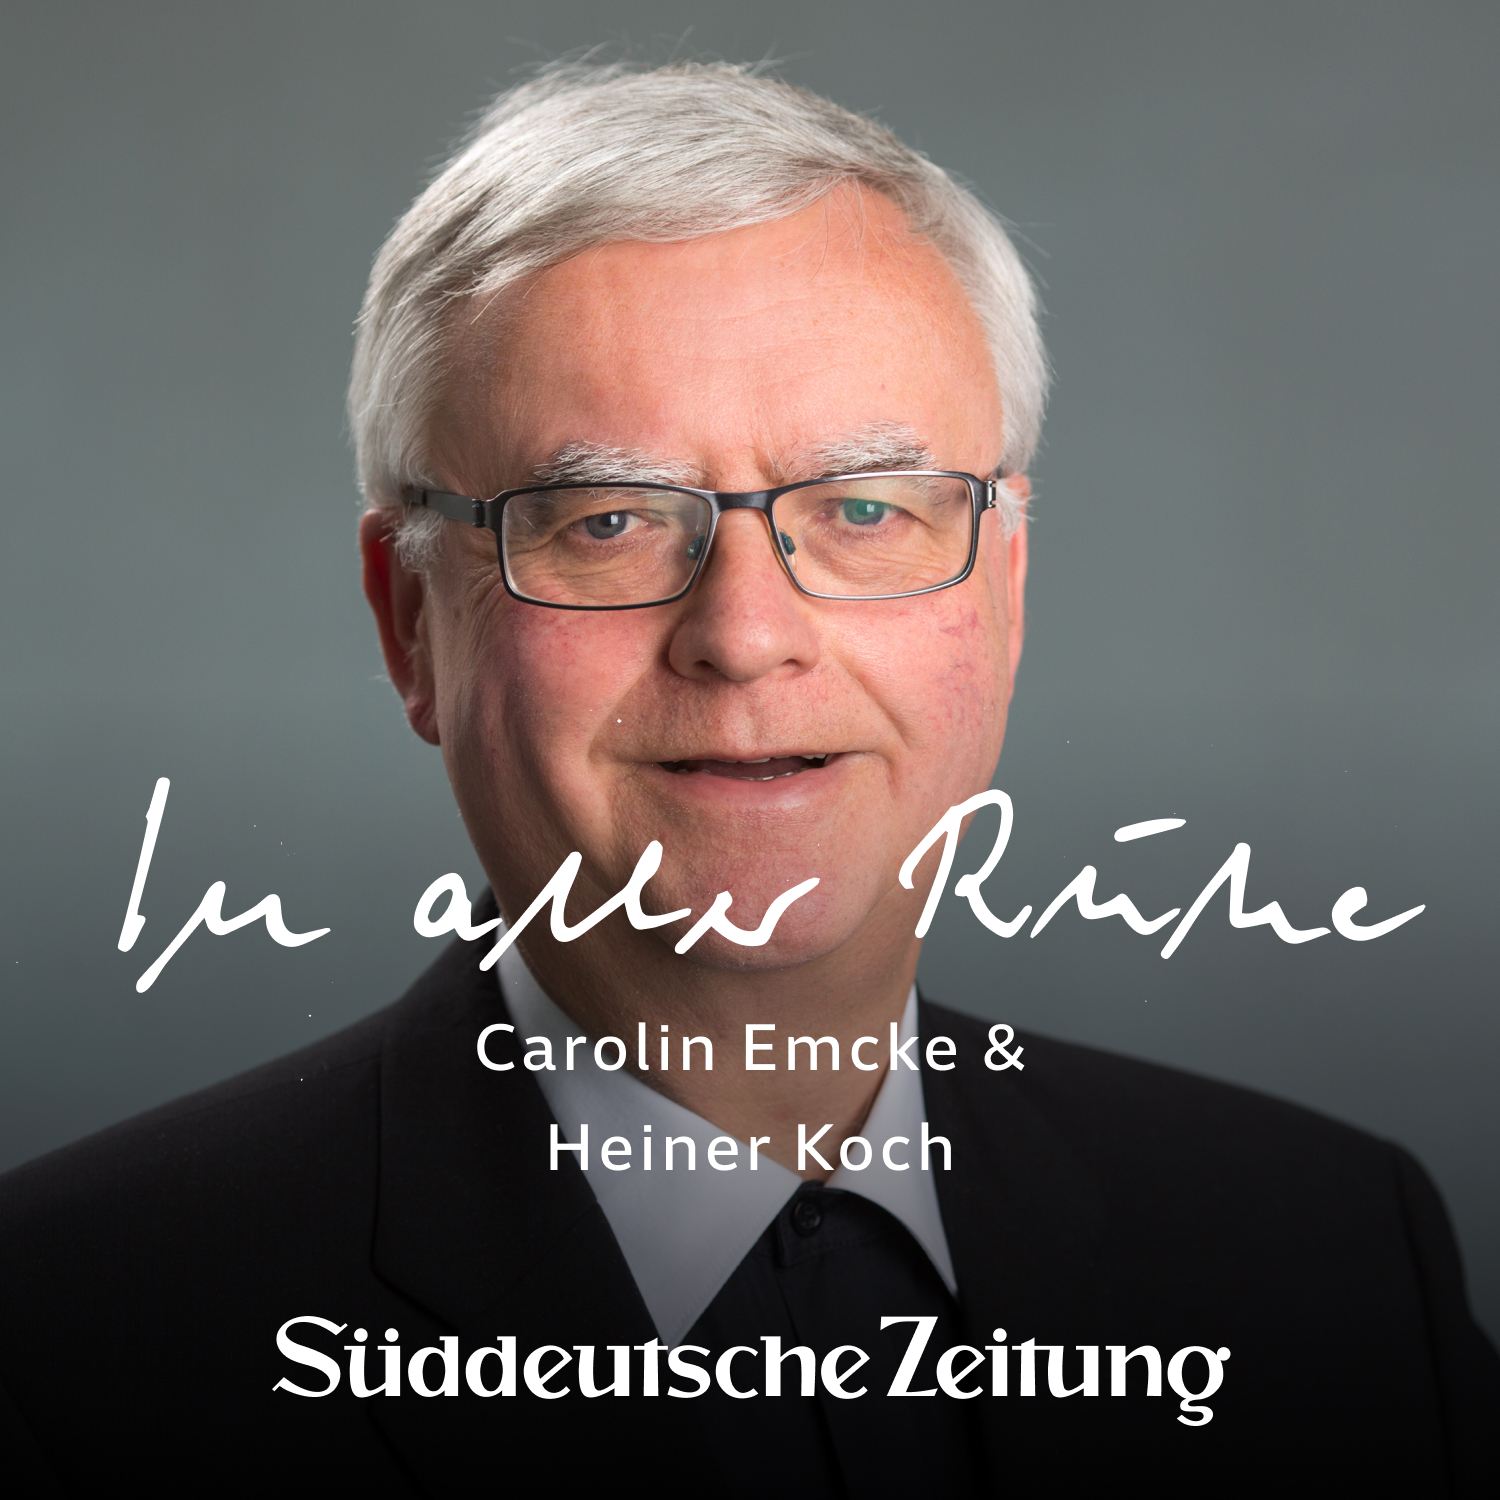 „Will ich segnen“ – Erzbischof Heiner Koch bei Carolin Emcke über homosexuelle Paare